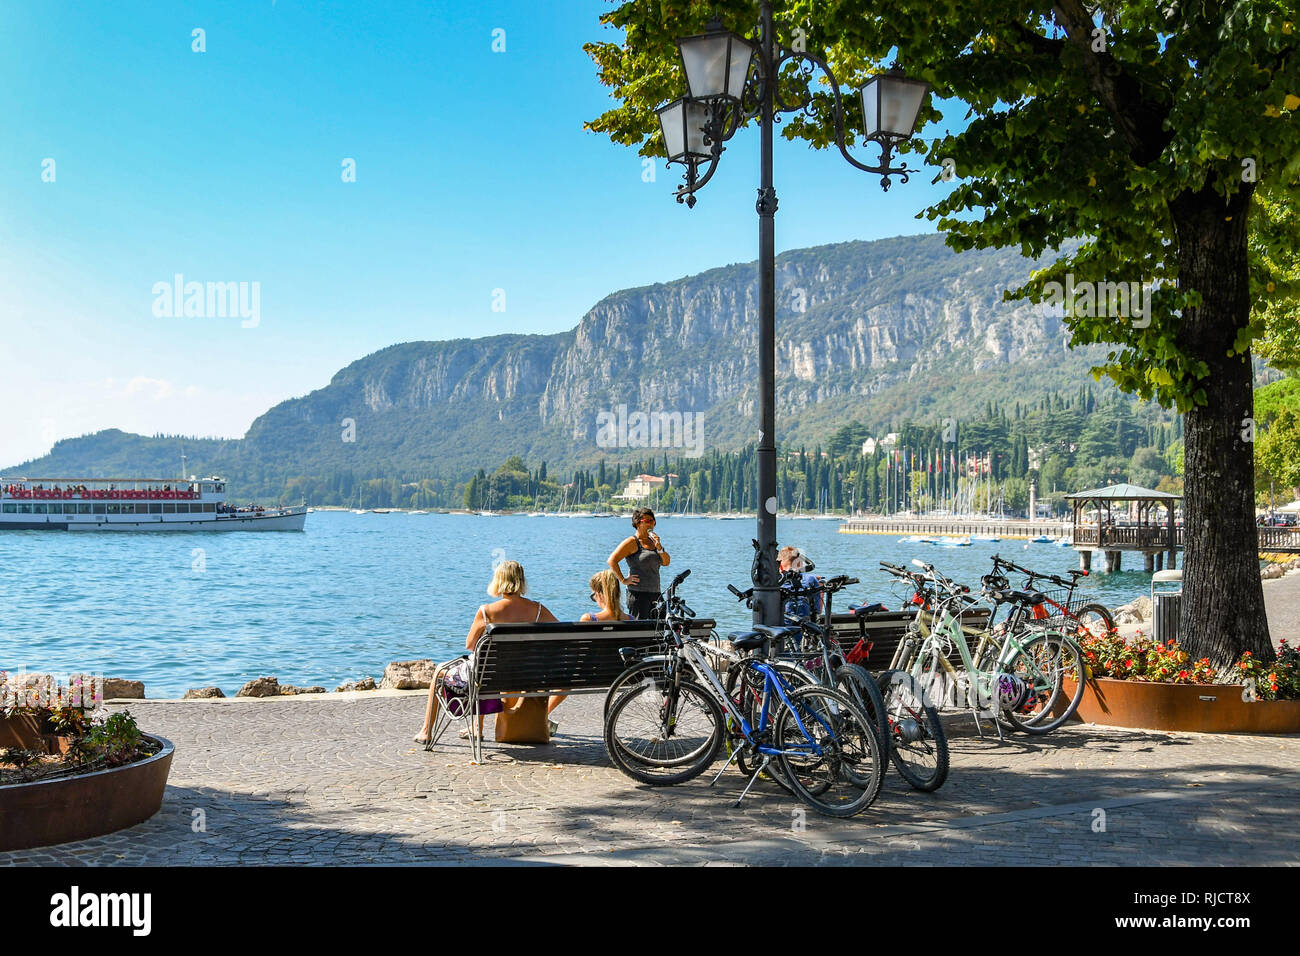 GARDA, Gardasee, Italien - September 2018: Menschen sitzen auf der Seite des Gardasees mit Fahrrädern neben geparkt. Stockfoto